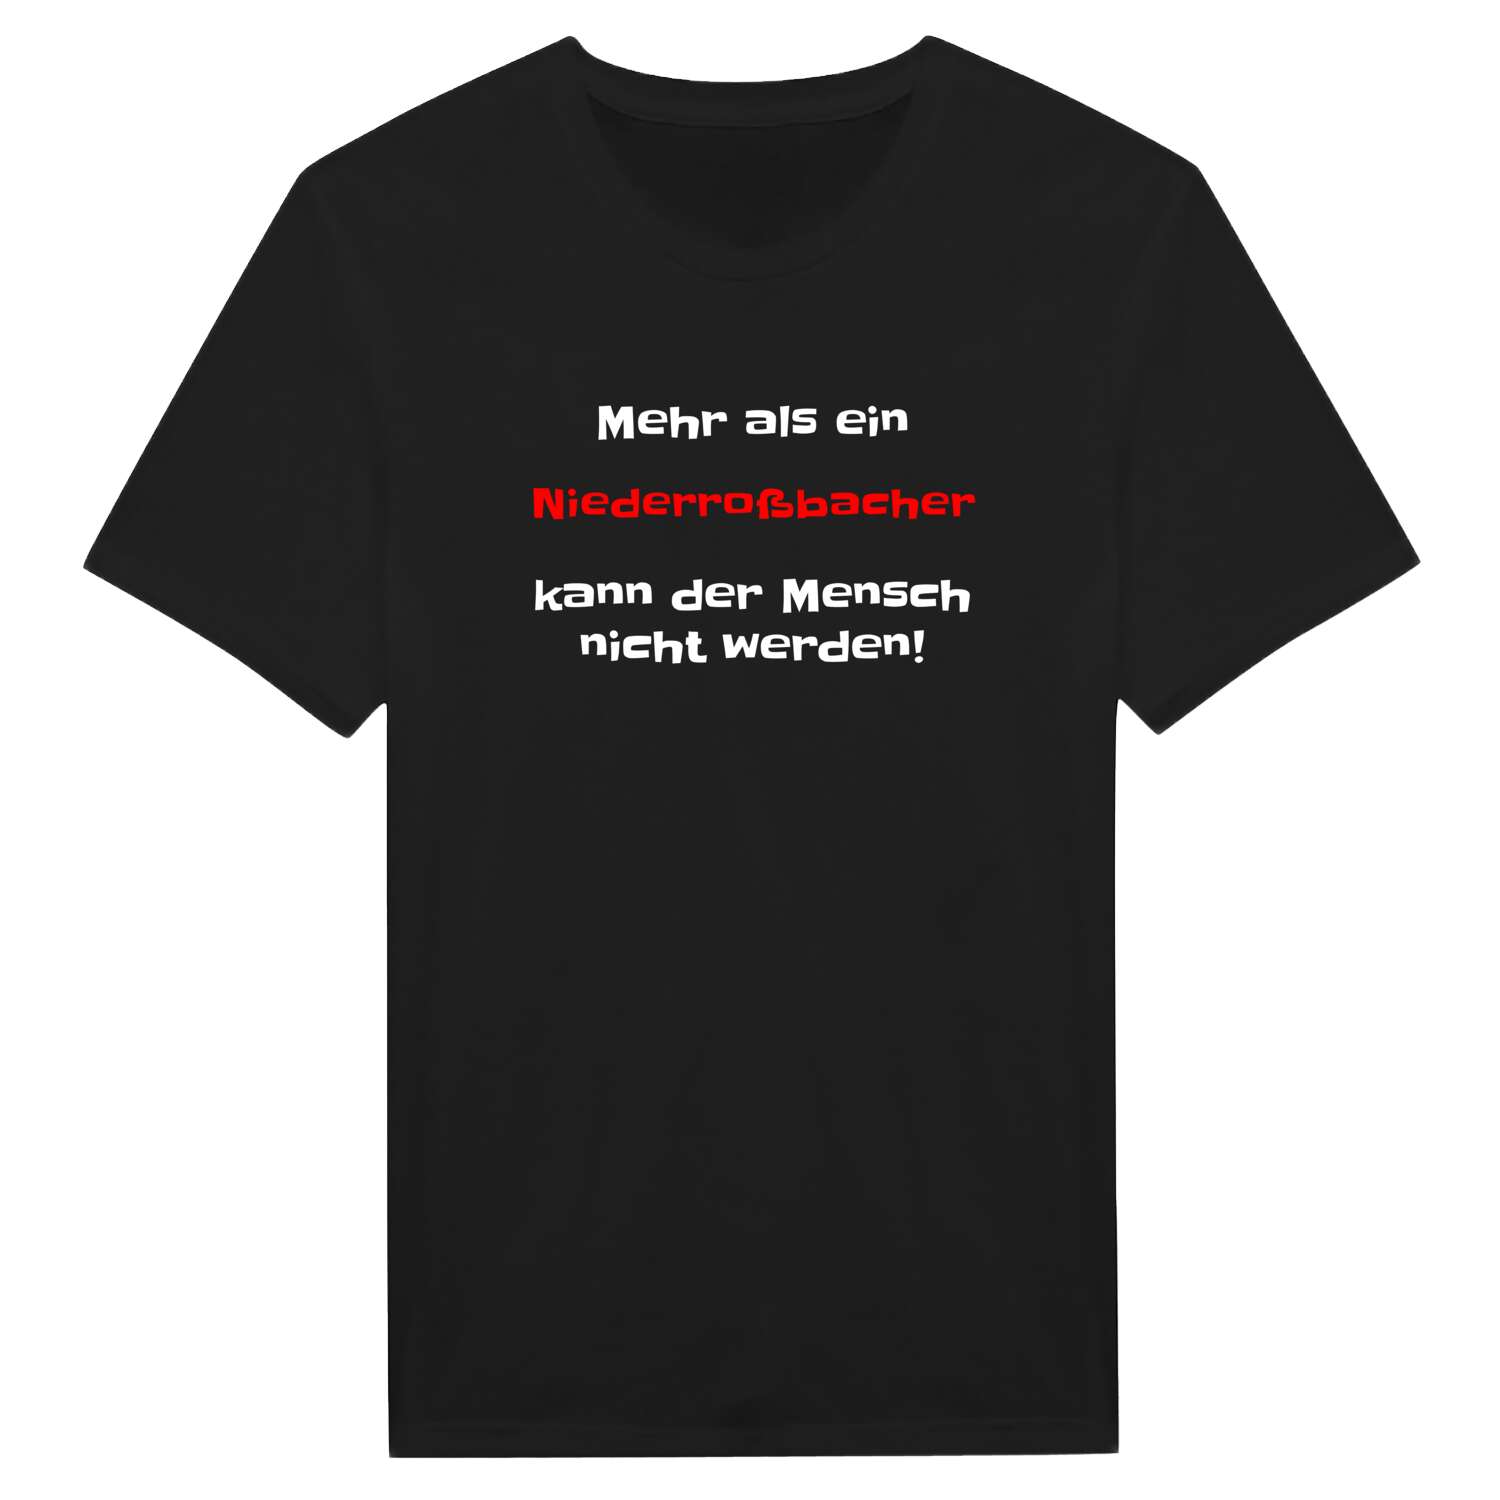 Niederroßbach T-Shirt »Mehr als ein«